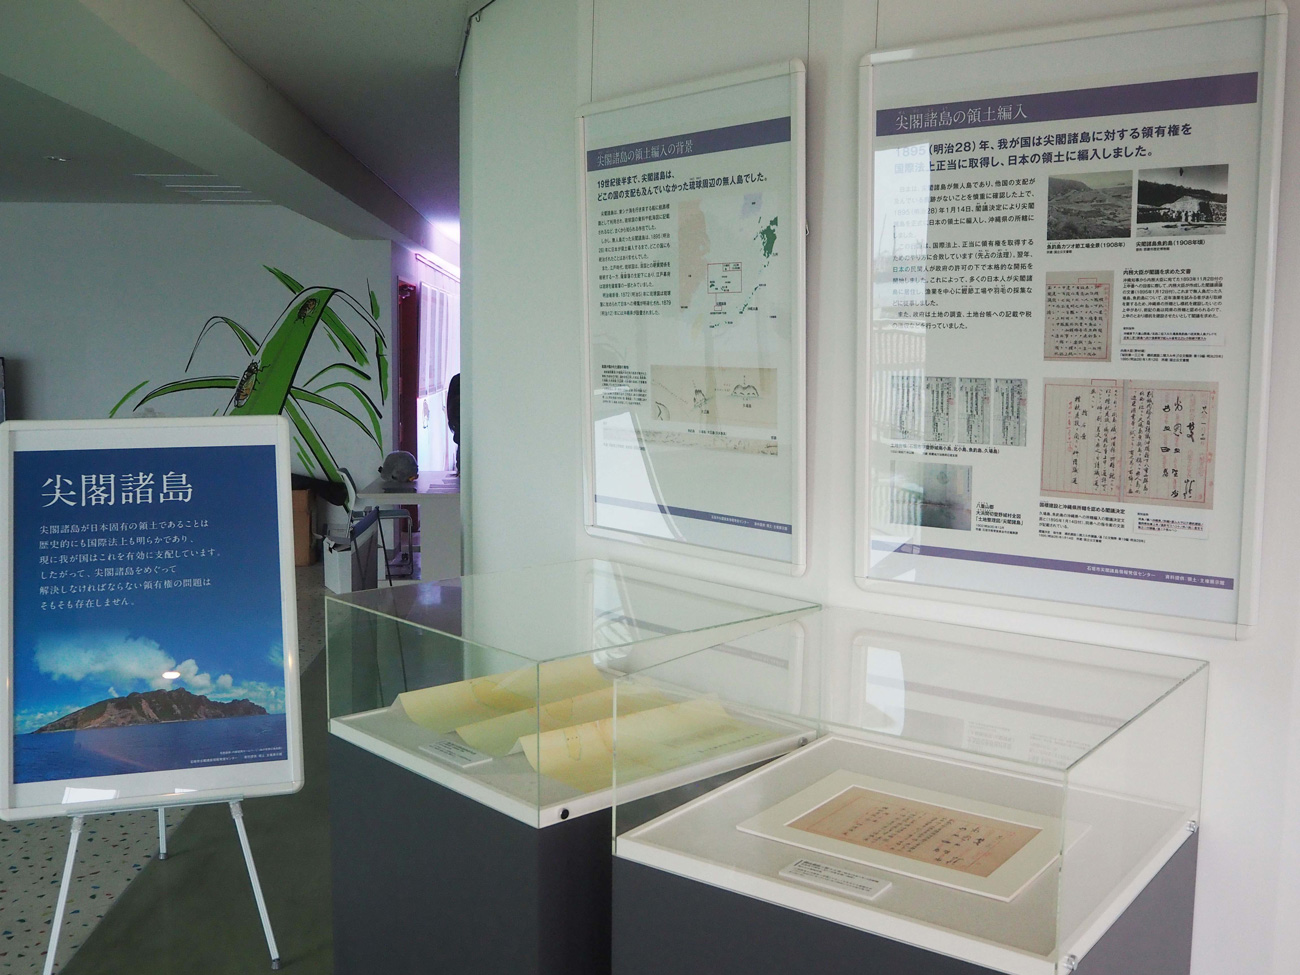 与尖阁诸岛的历史、自然环境相关的展板和历史史料的复制品展示